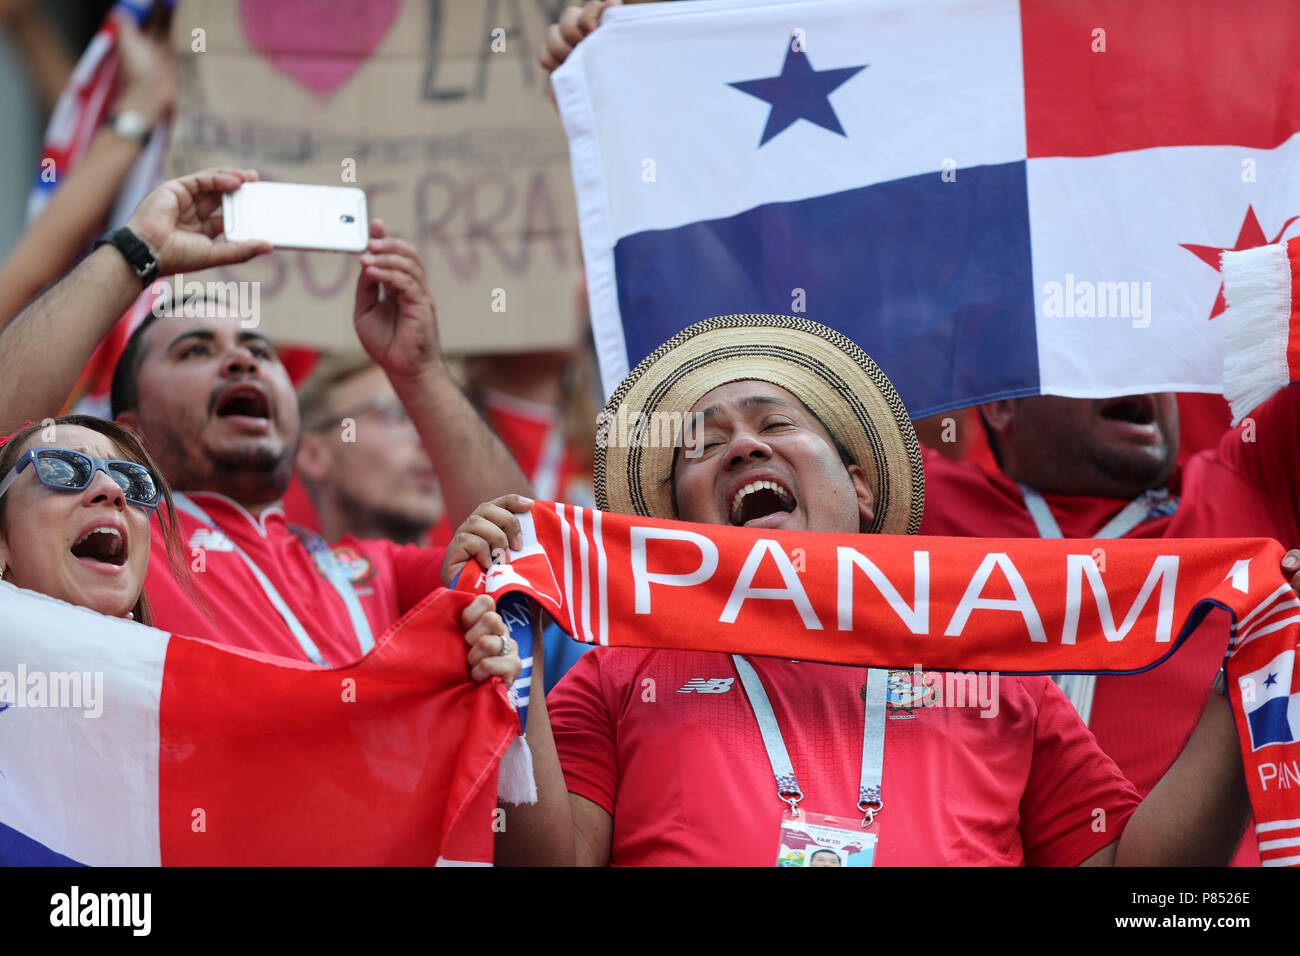 Torcida do Panama  realizada neste domingo, 24, no Estádio Nizhny Novgorod, na Rússia, válida pela 2ª rodada do Grupo G da Copa do Mundo 2018. Stock Photo